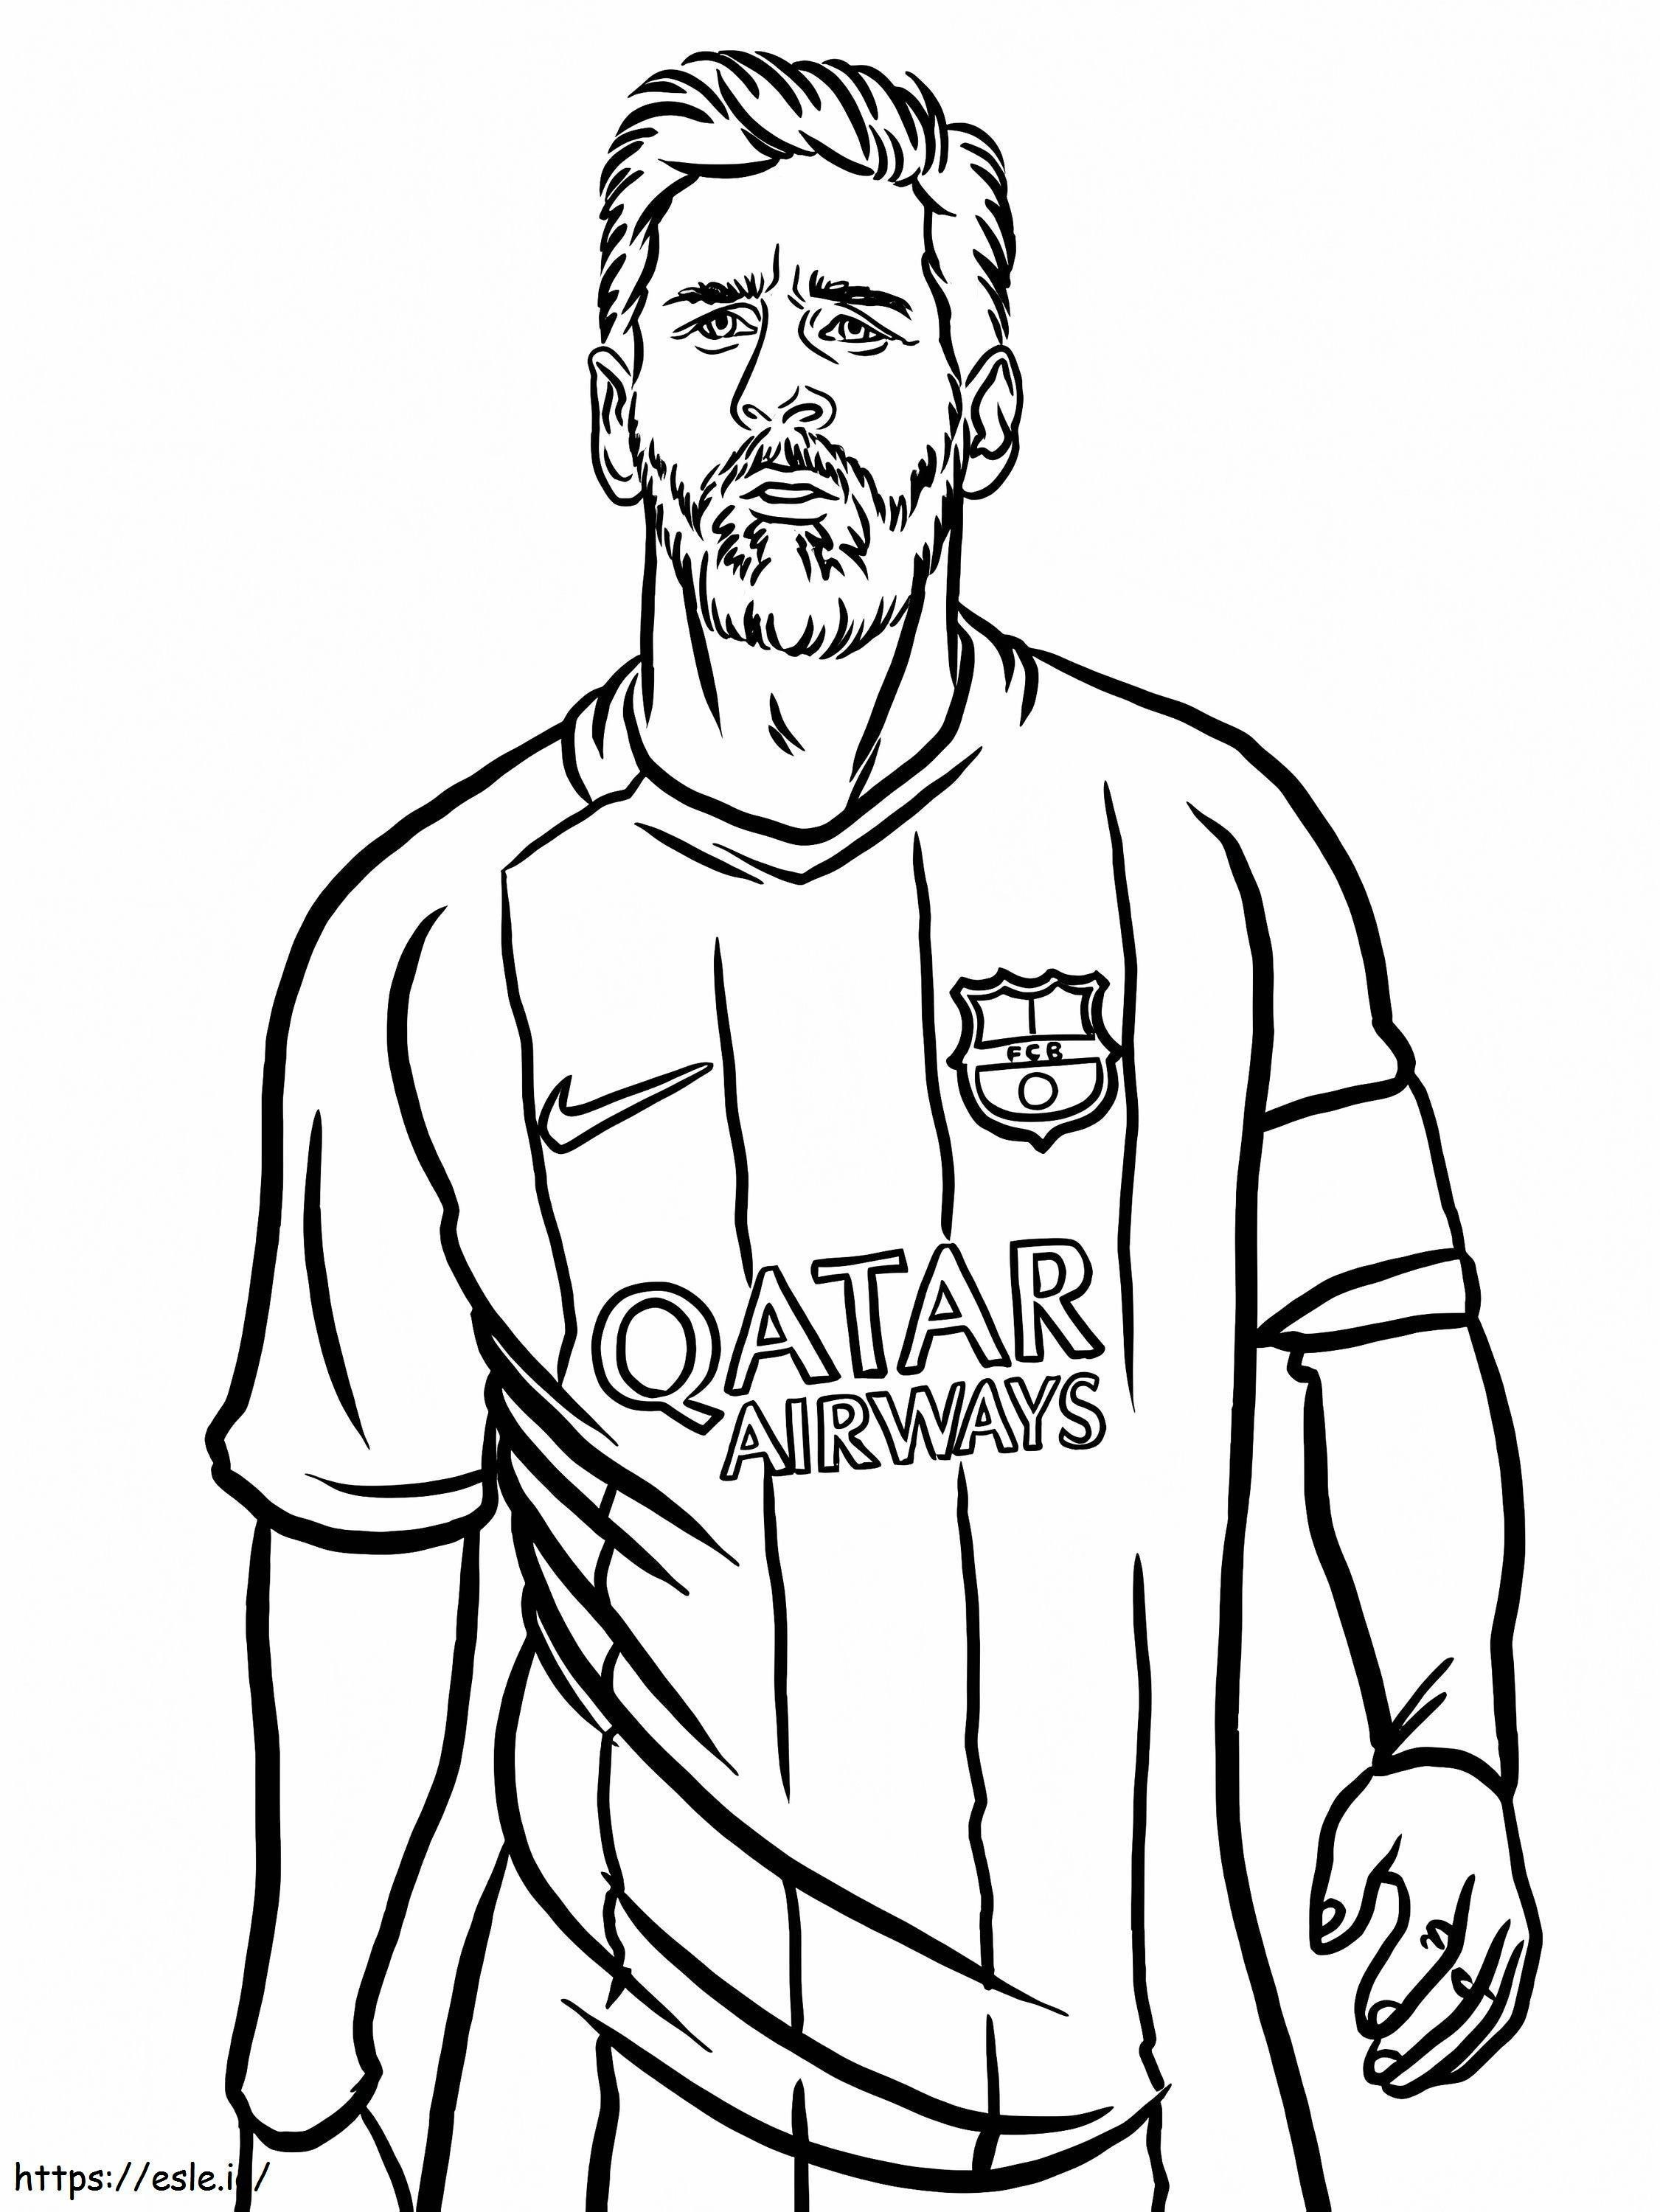 Retrato de Lionel Messi para colorir